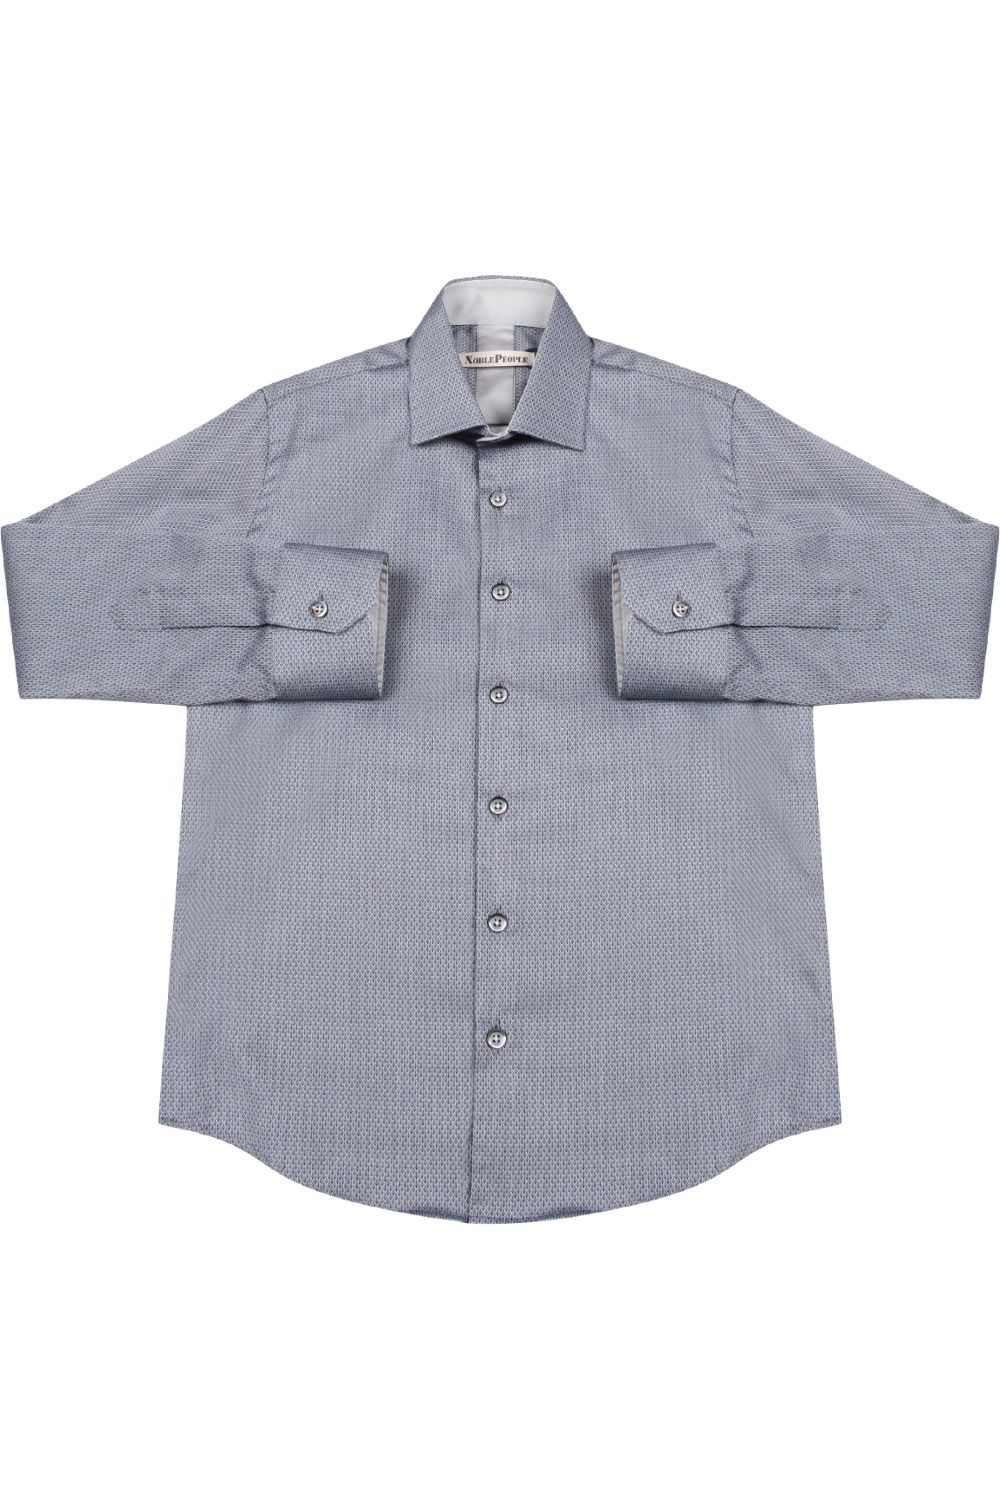 Рубашка Noble People, размер 122, цвет серый